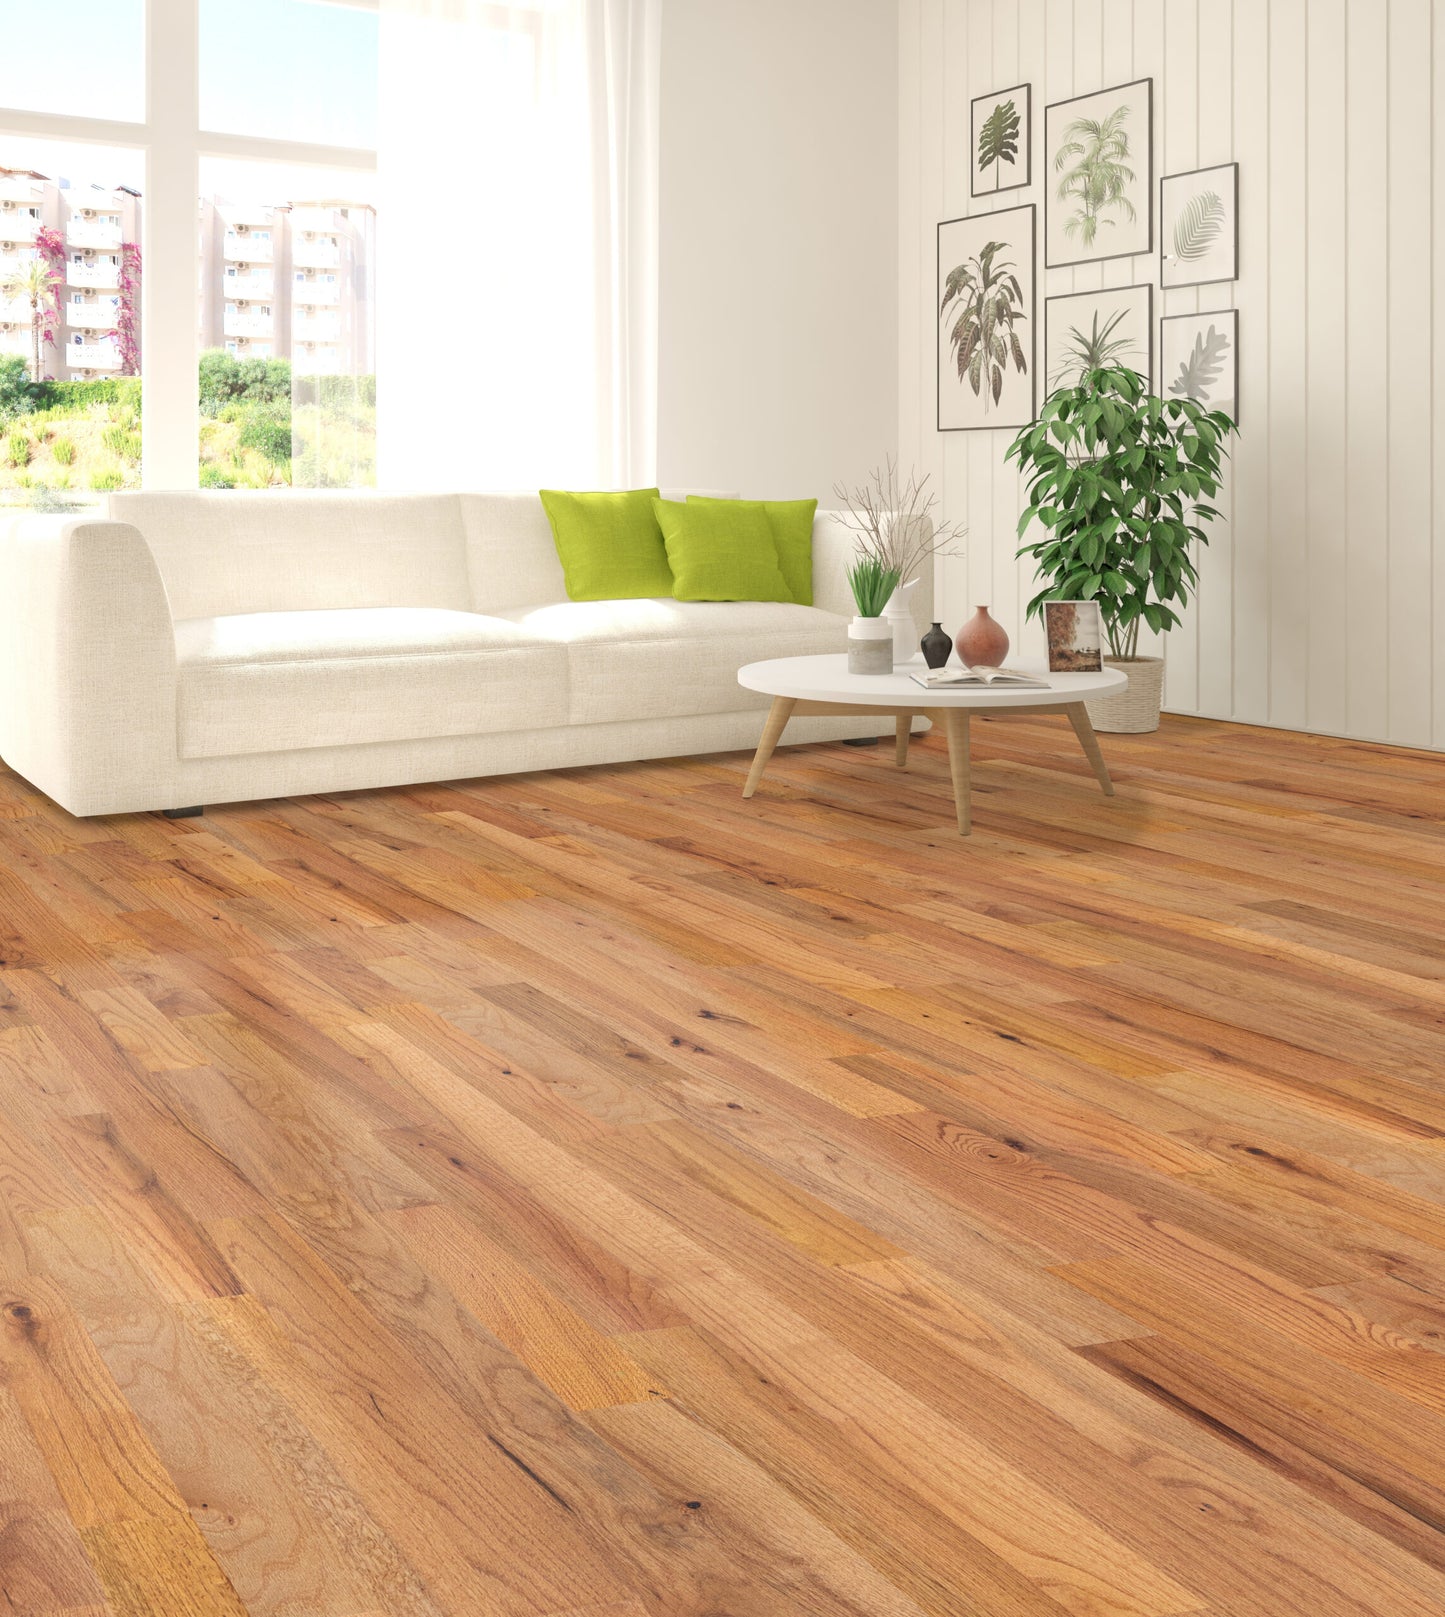 3 1/4 x 3/4 Solid Oak Bistre Stain Prefinished Hardwood Flooring